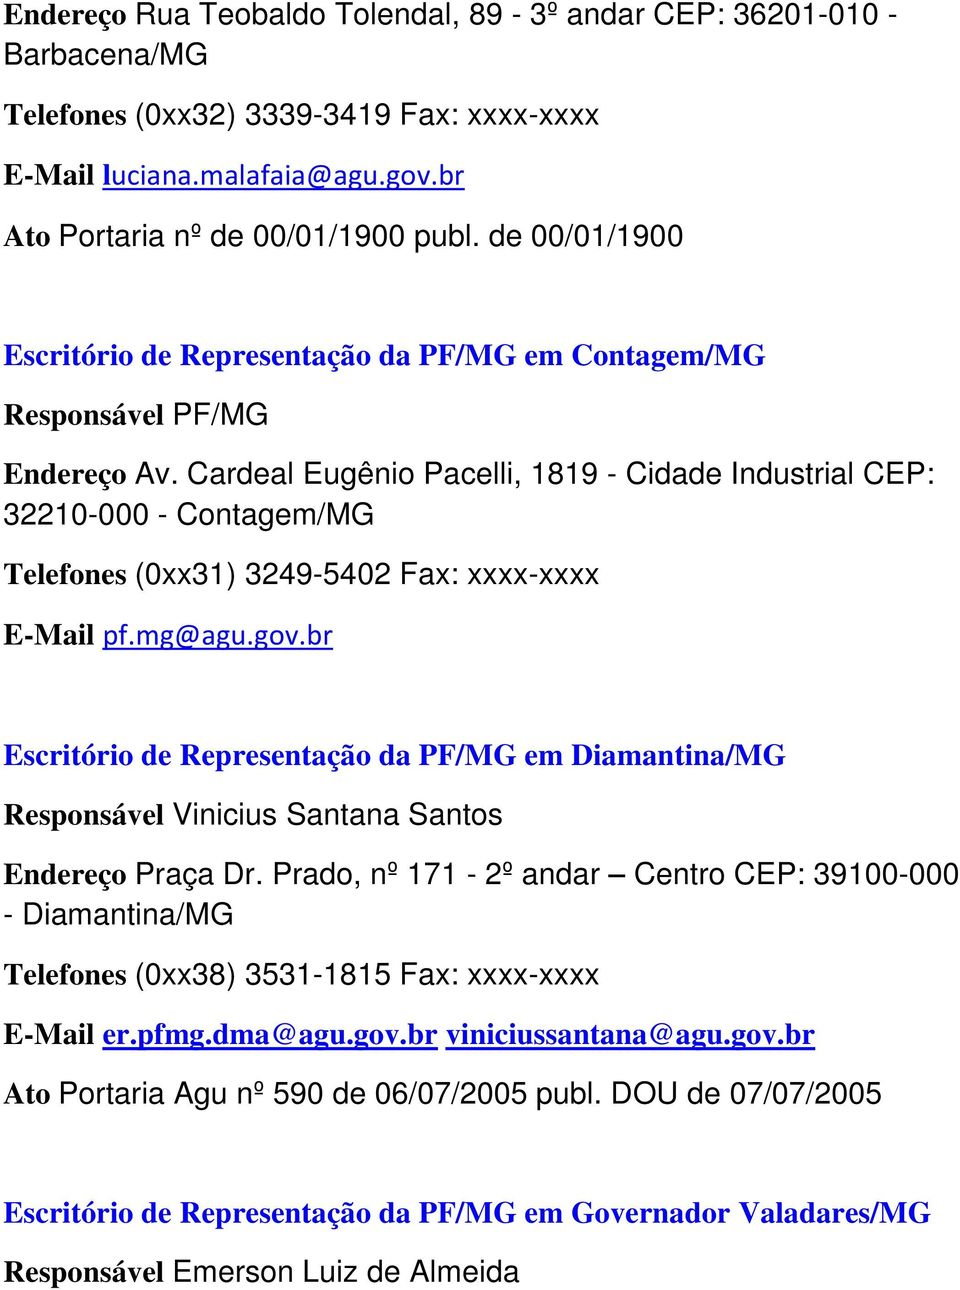 Cardeal Eugênio Pacelli, 1819 - Cidade Industrial CEP: 32210-000 - Contagem/MG Telefones (0xx31) 3249-5402 Fax: xxxx-xxxx E-Mail pf.mg@agu.gov.